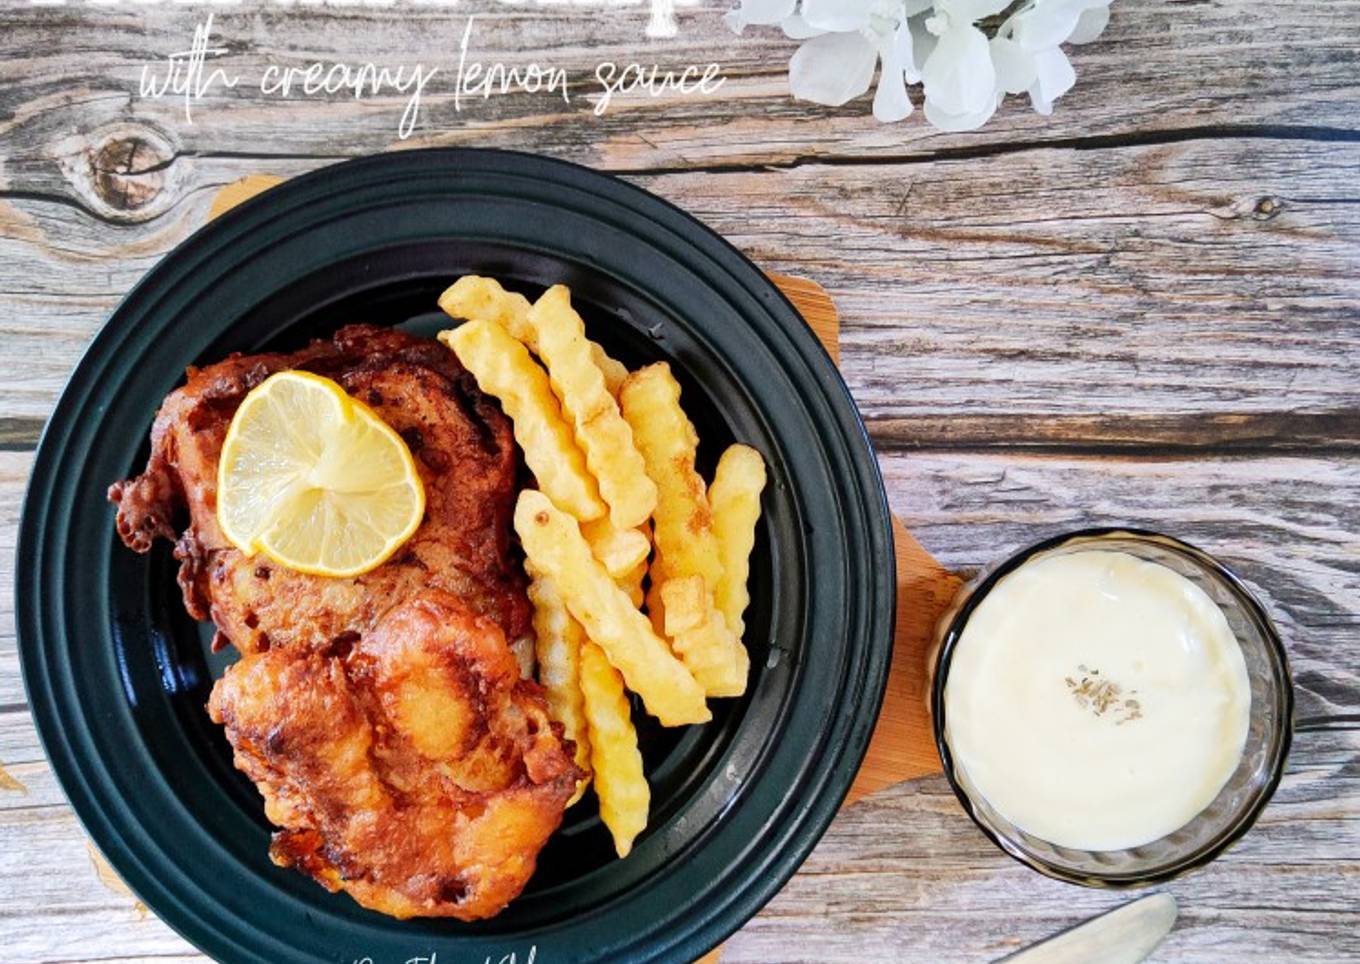 Resepi Fish and chips with creamy lemon sauce yang Menggugah Selera dan Mudah